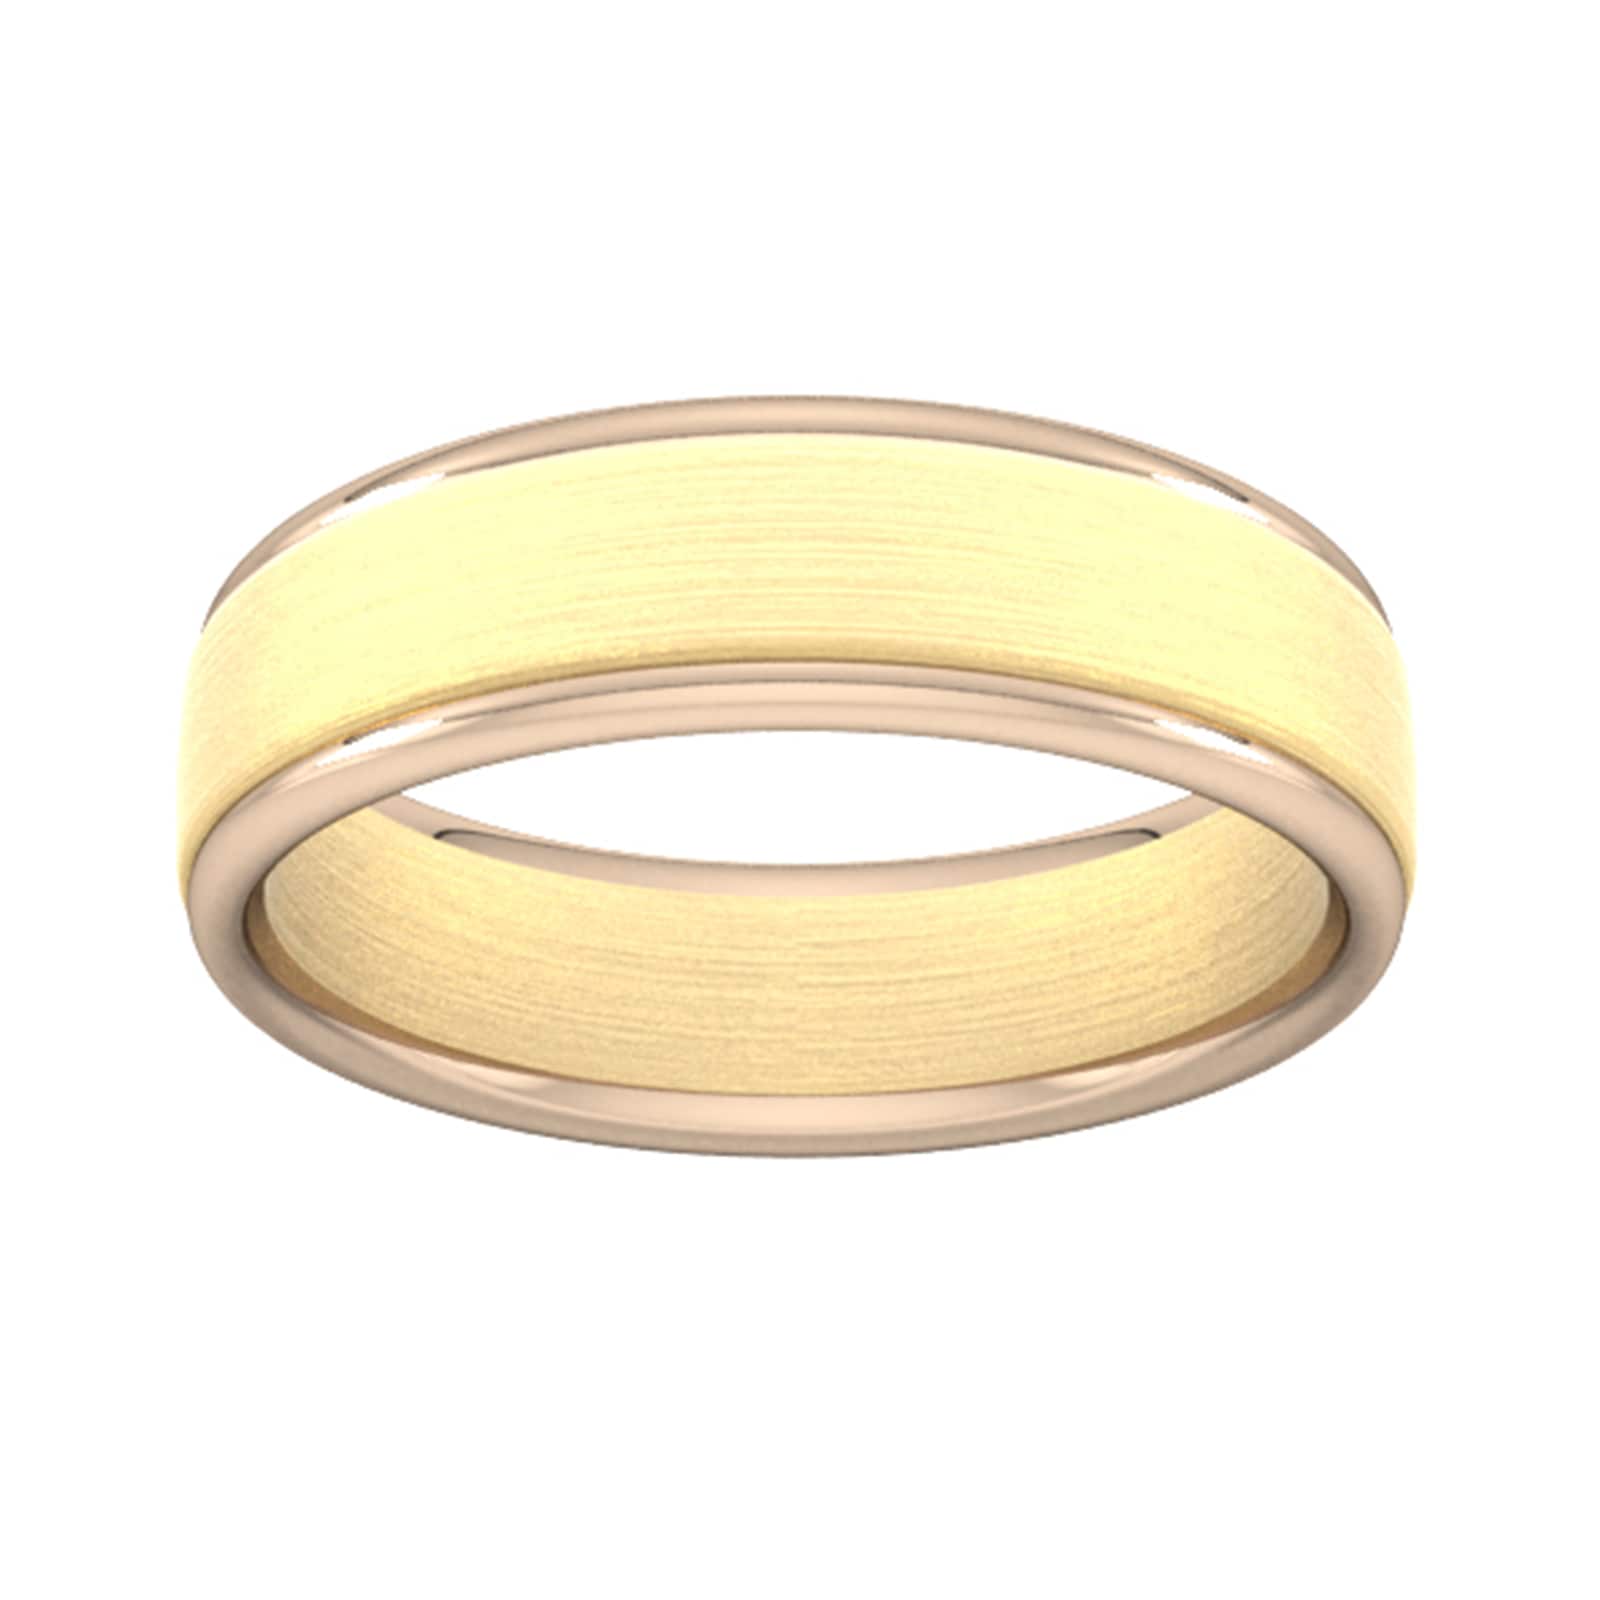 6mm Wedding Ring In 9 Carat Yellow & Rose Gold - Ring Size K